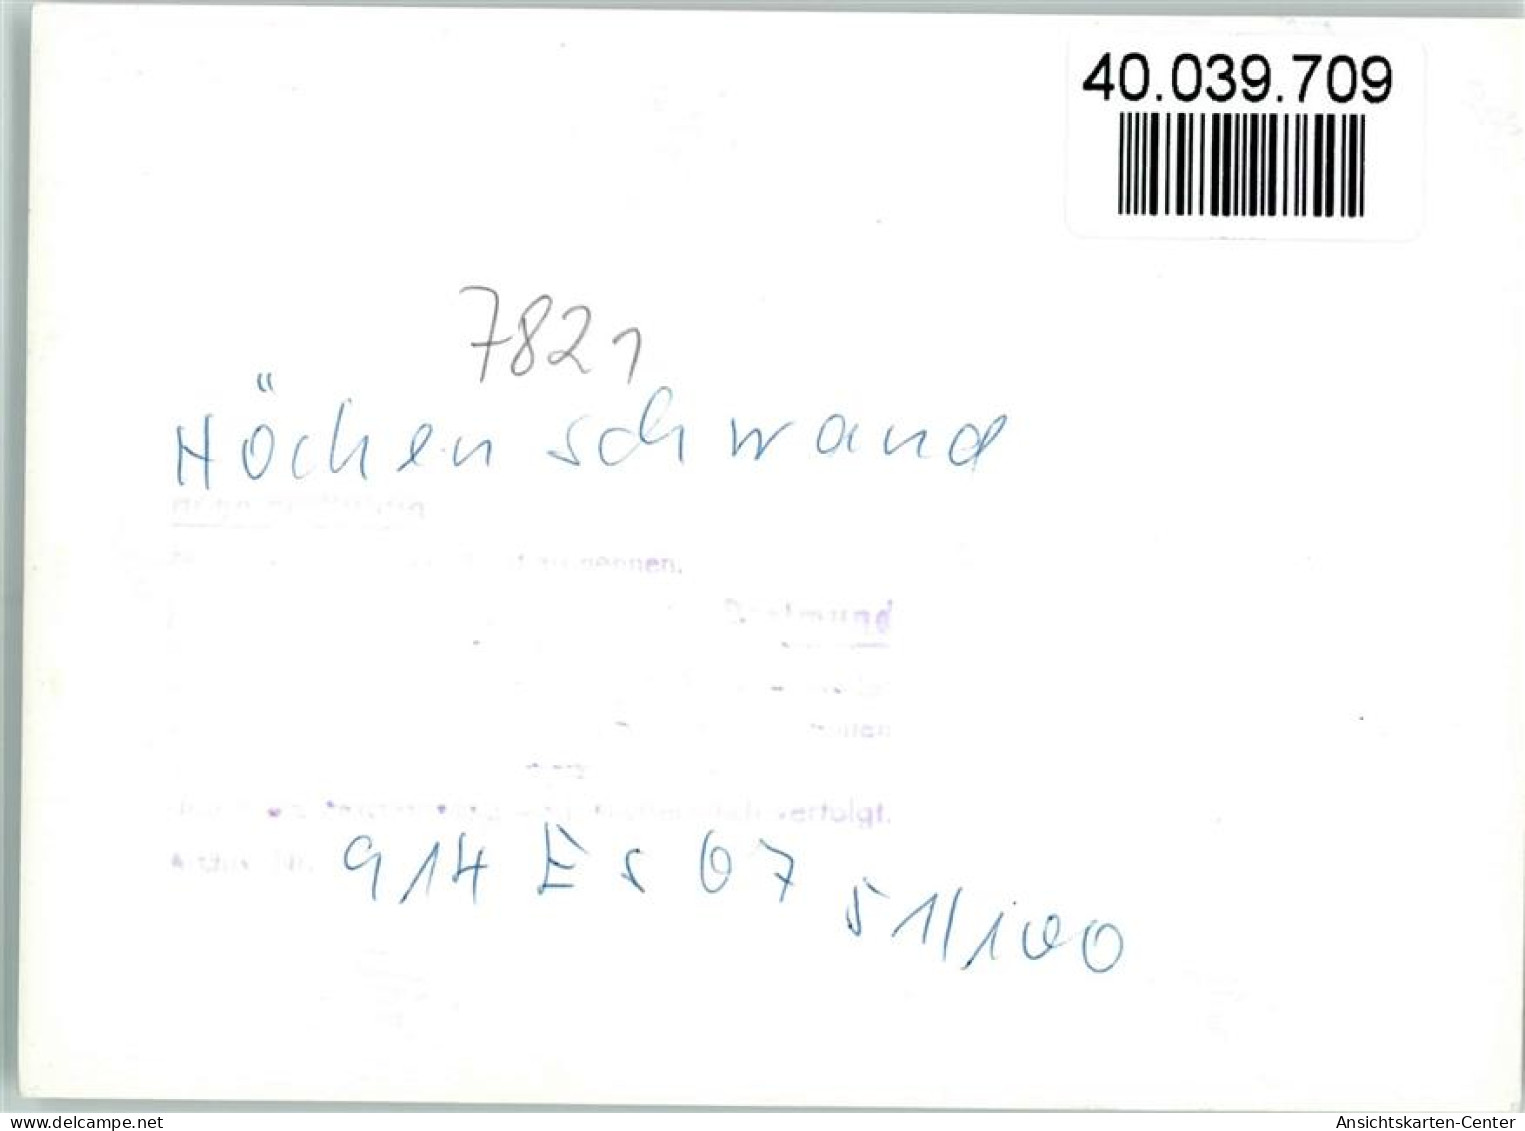 40039709 - Hoechenschwand - Höchenschwand